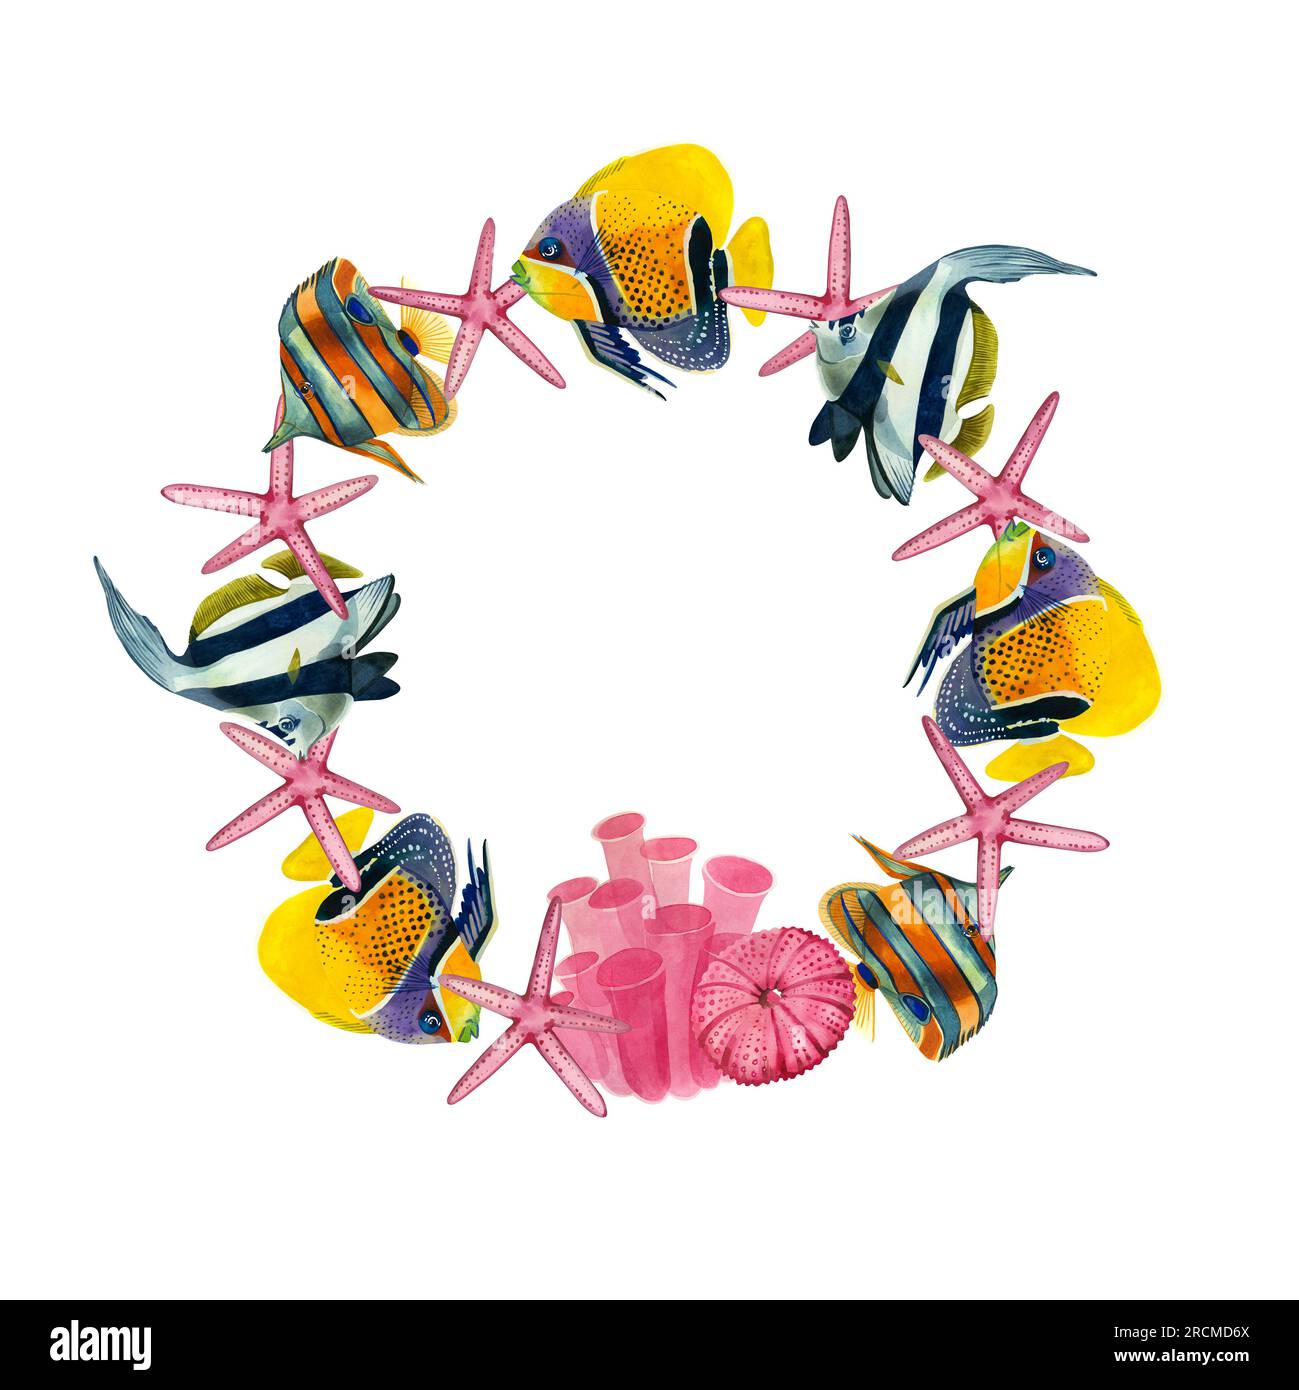 Cadre rond de poissons tropicaux et étoiles, corail et oursin rose sur fond blanc. Tous les éléments sont dessinés à la main à l'aquarelle Banque D'Images